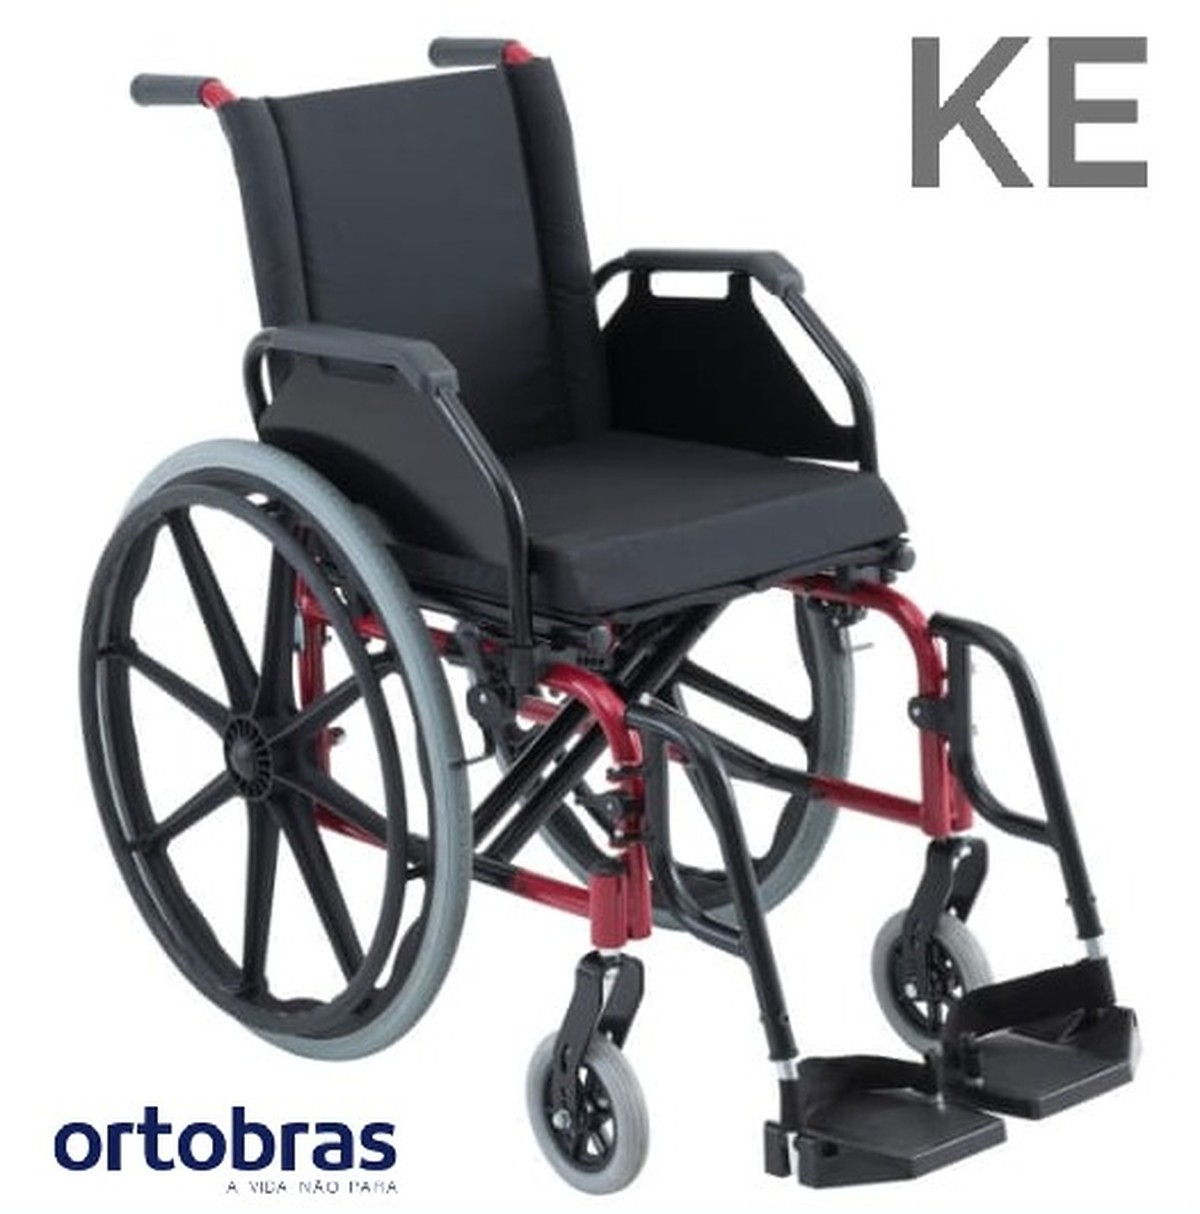 Foto do produto Cadeira de Rodas KE Até 120 Kg - Assento 44cm  Ortobras 